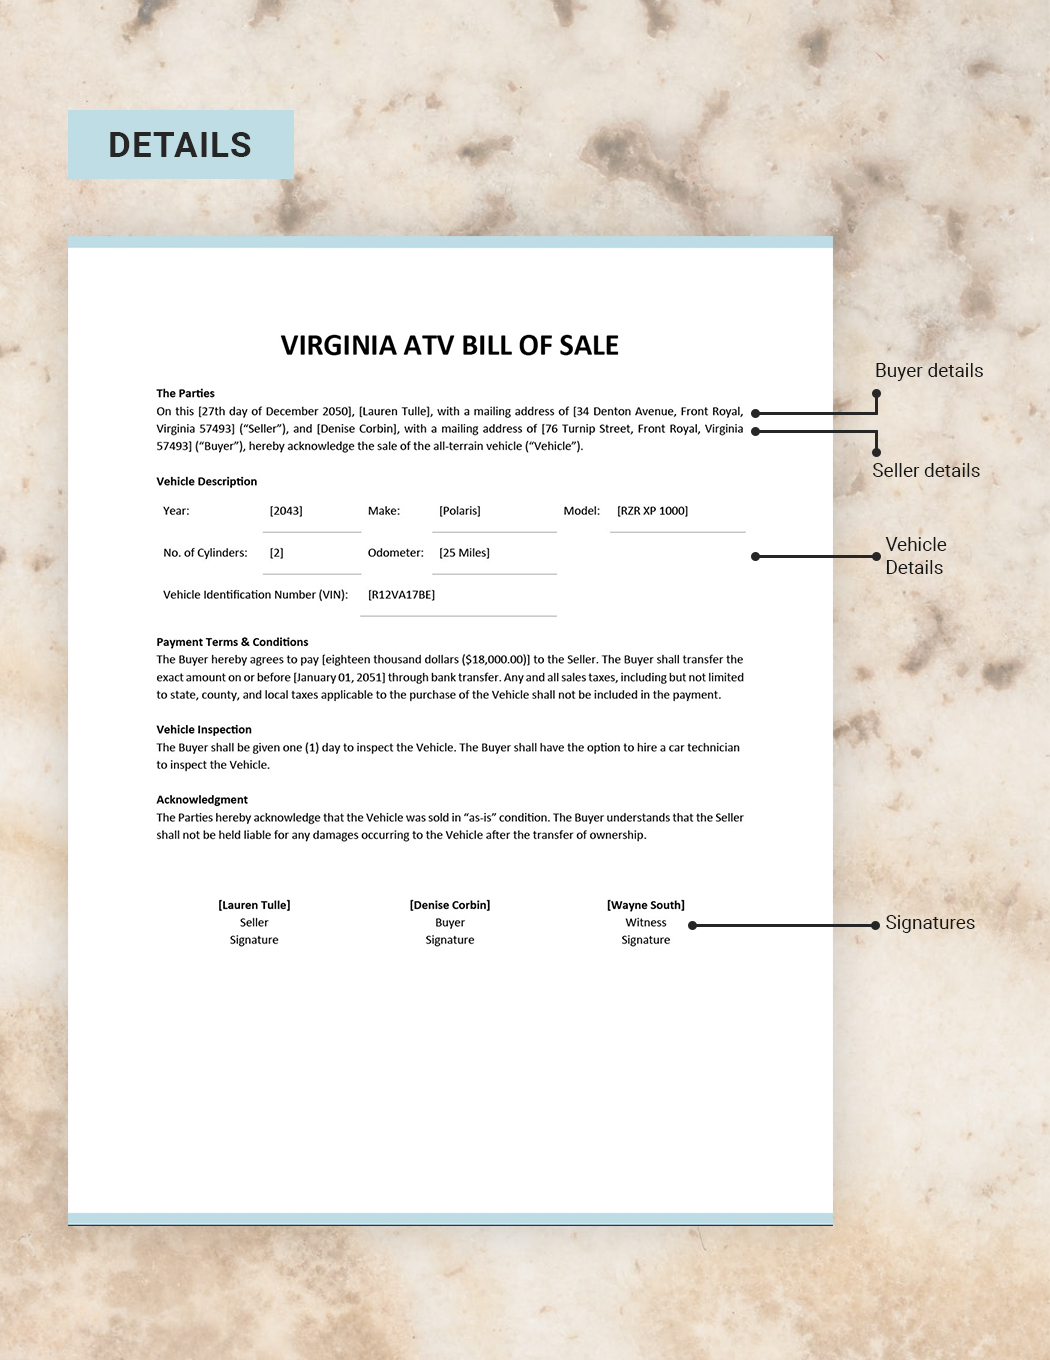 Virginia ATV Bill of Sale Template